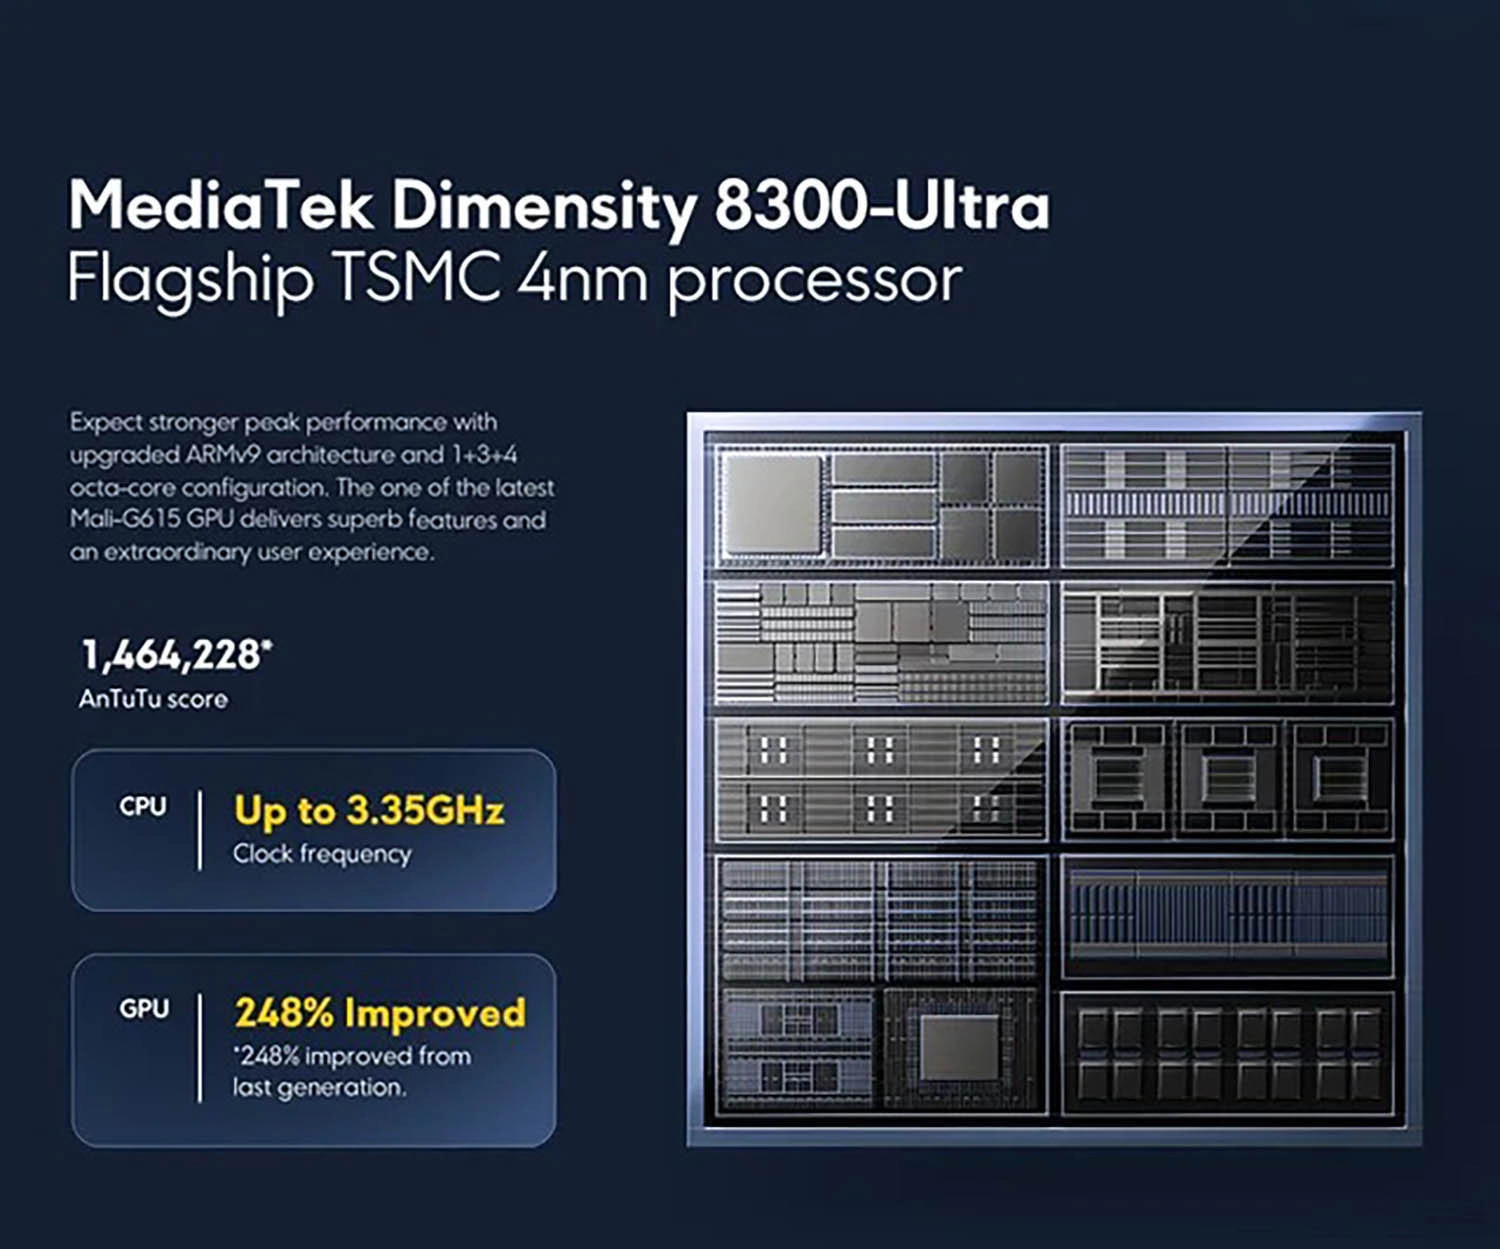 Đánh giá hiệu năng Dimensity 8300 Ultra: Dimensity 8300 Ultra sở hữu hiệu năng rất ấn tượng